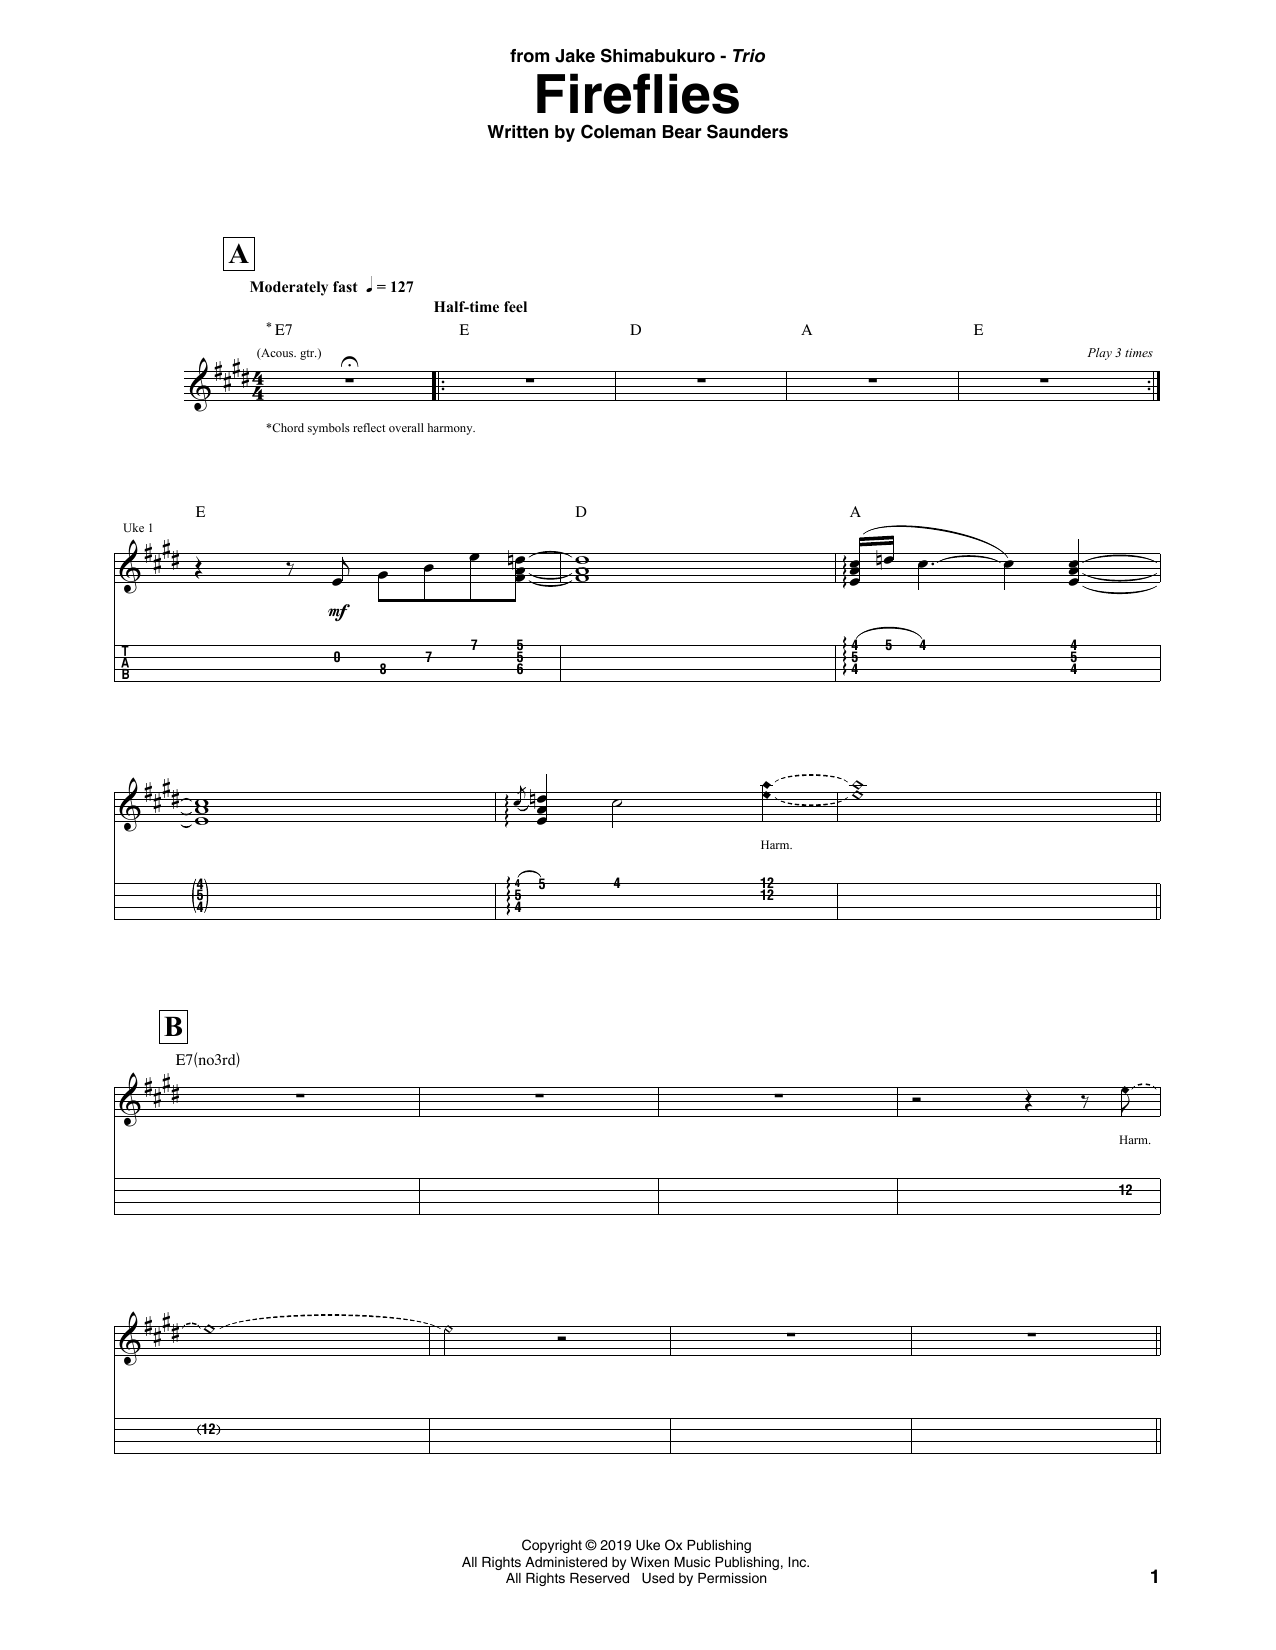 Jake Shimabukuro Trio Fireflies Sheet Music Notes & Chords for Ukulele Tab - Download or Print PDF